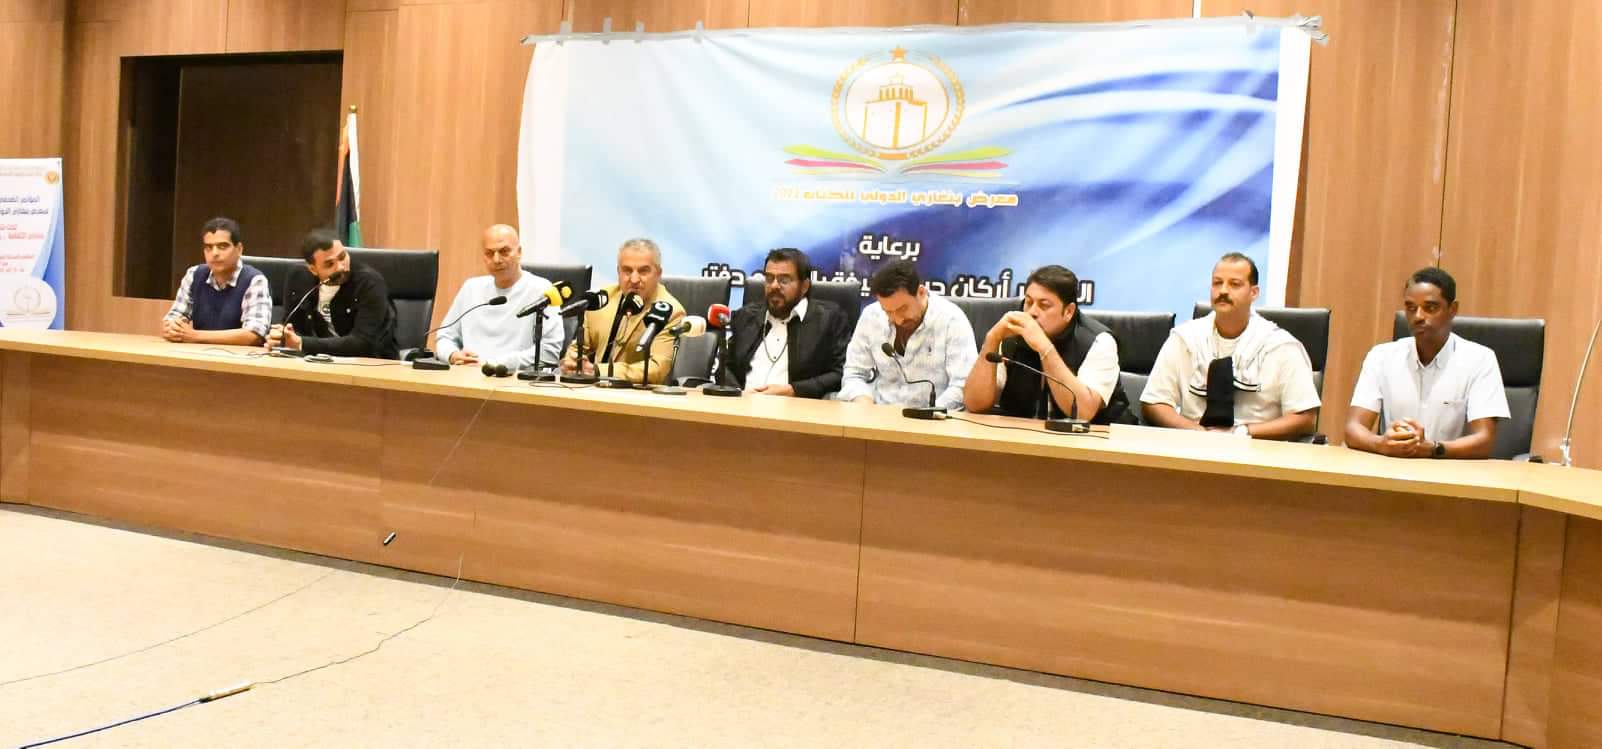 وال| فريق عمل الفيلم العربي (ما قبل النهاية) يعقد مؤتمراً صحفياً في بنغازي